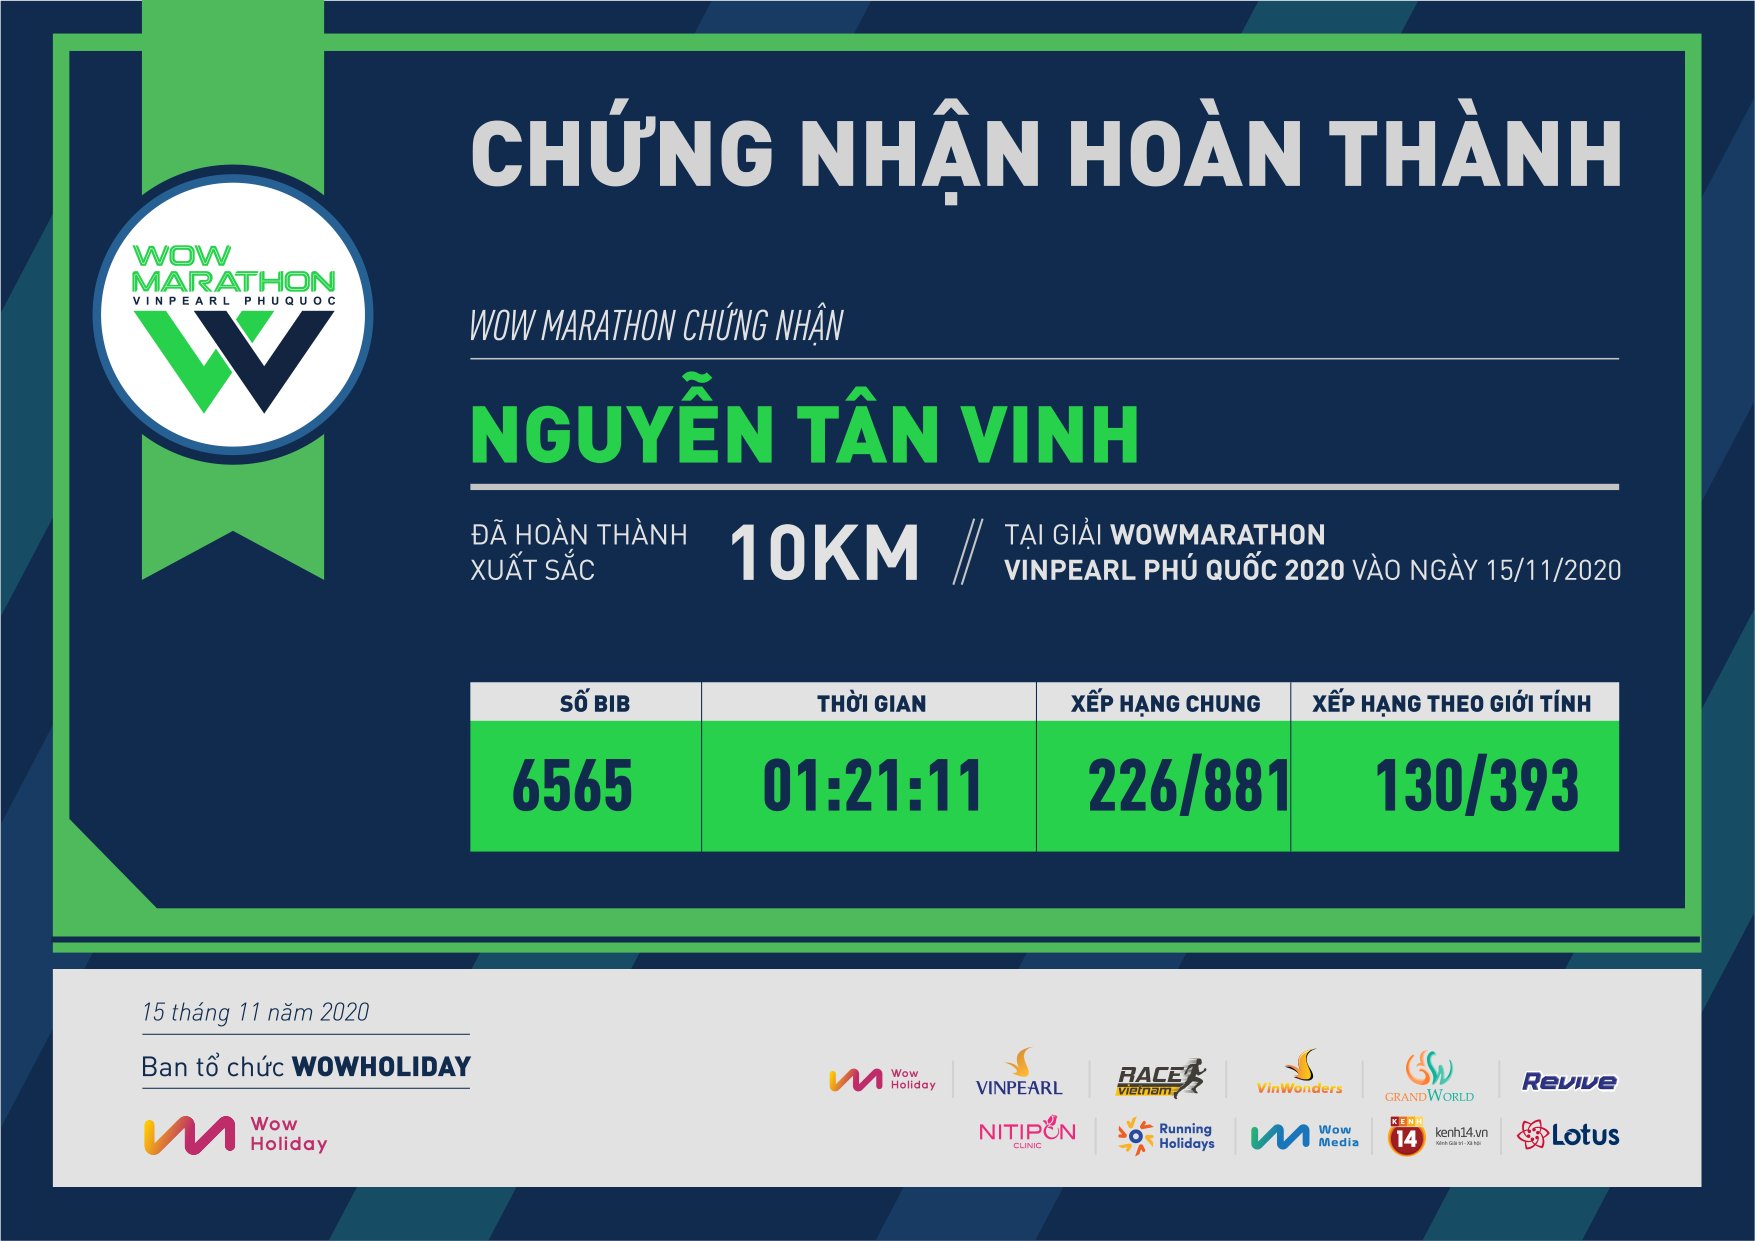 6565 - Nguyễn Tân Vinh